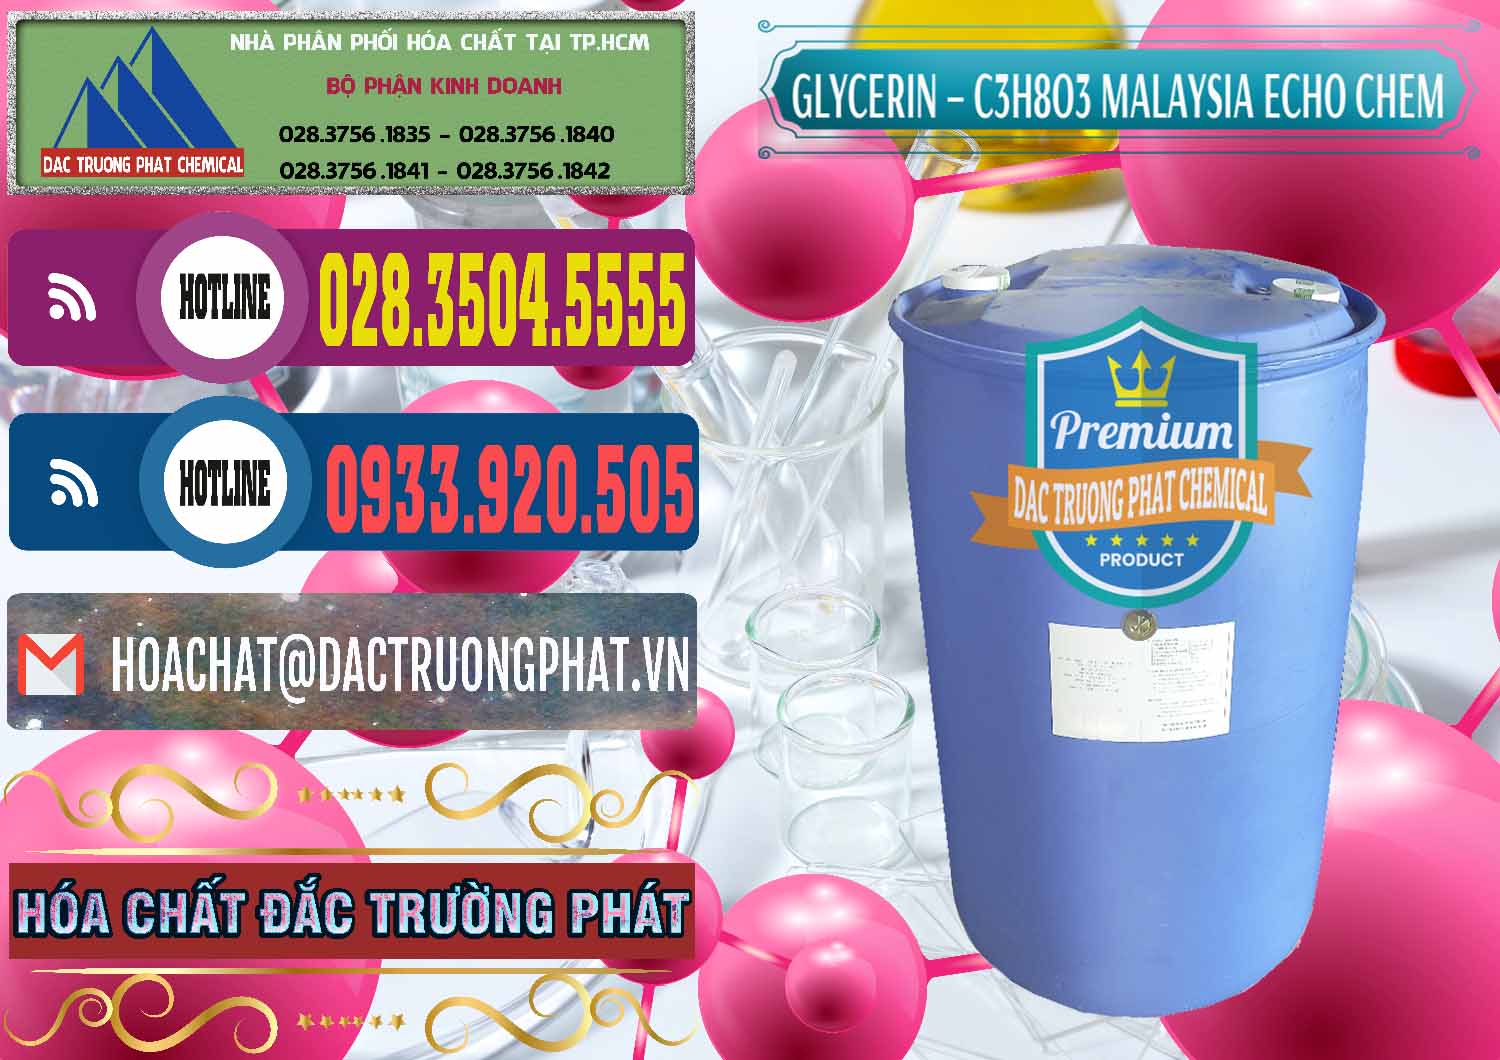 Đơn vị kinh doanh _ bán C3H8O3 - Glycerin 99.7% Echo Chem Malaysia - 0273 - Cty chuyên phân phối _ nhập khẩu hóa chất tại TP.HCM - muabanhoachat.com.vn